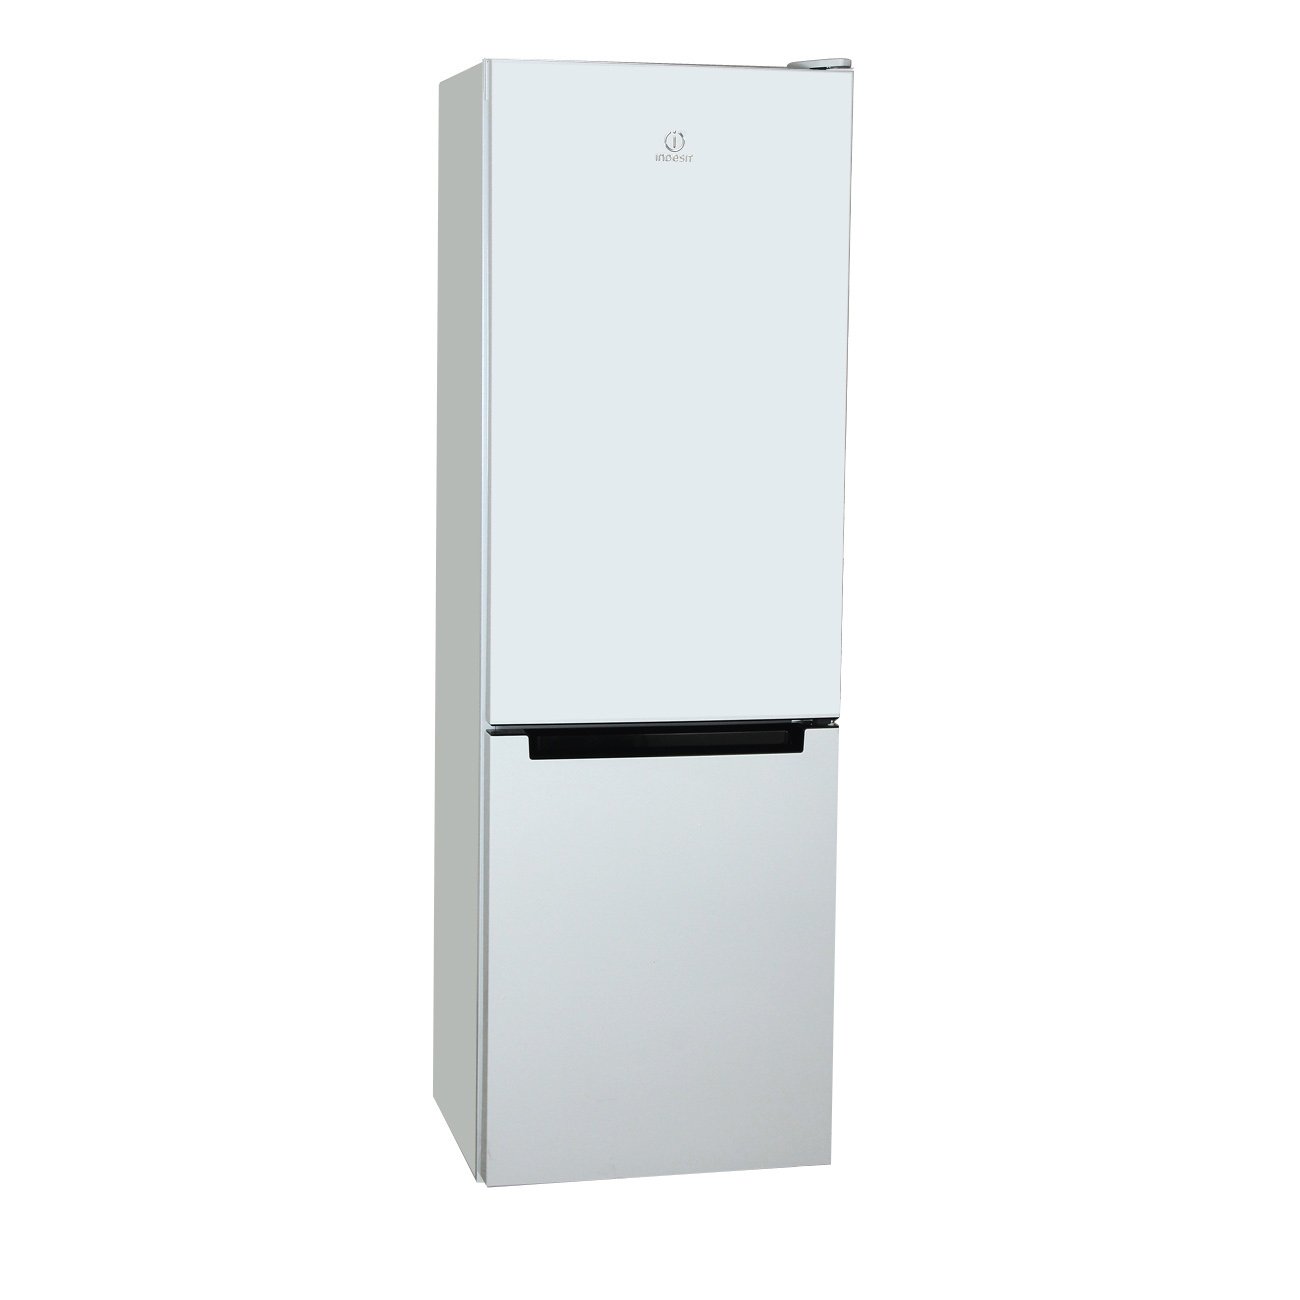 Холодильник индезит 4180 w. Холодильник Hisense rb440n4bw1, двухкамерный, белый. Холодильник Hisense rb440n4bw1.